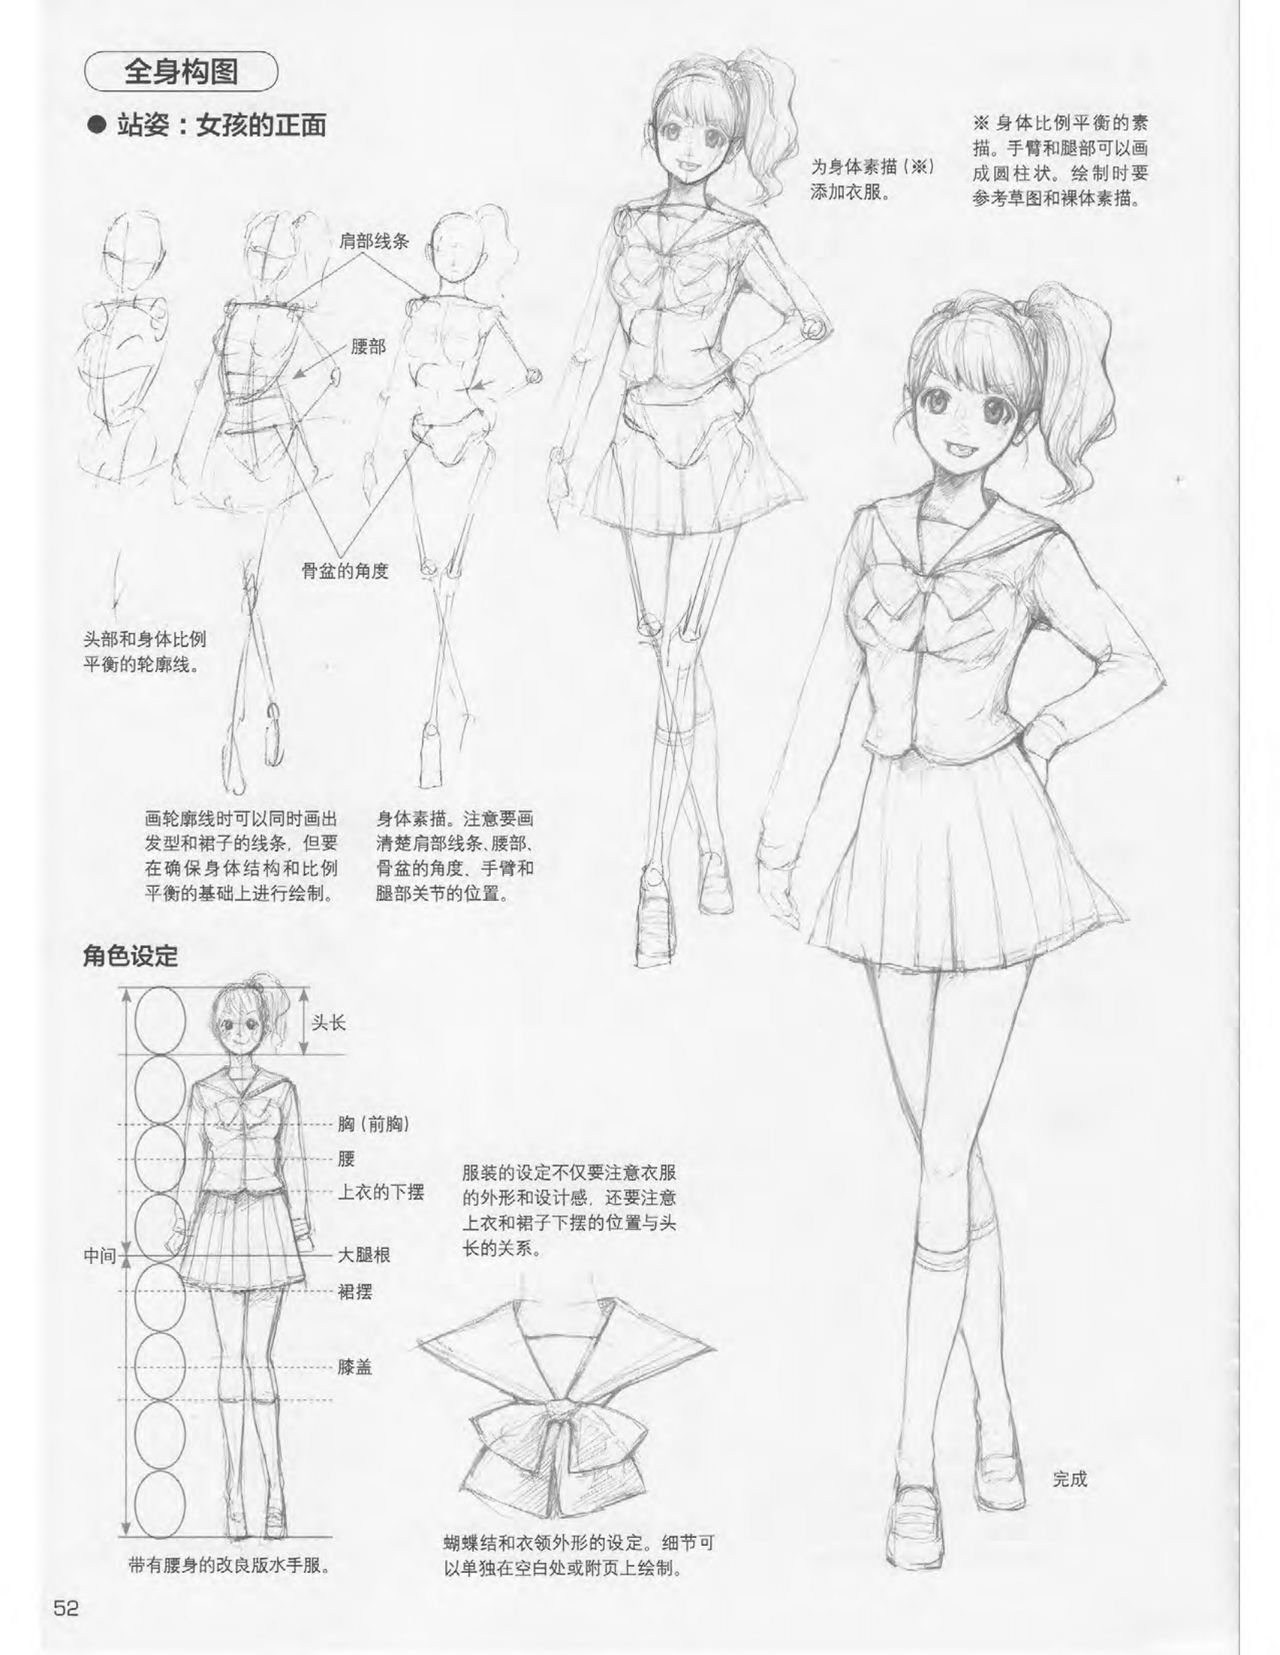 Japanese Manga Master Lecture 3: Lin Akira and Kakumaru Maru Talk About Glamorous Character Modeling 52